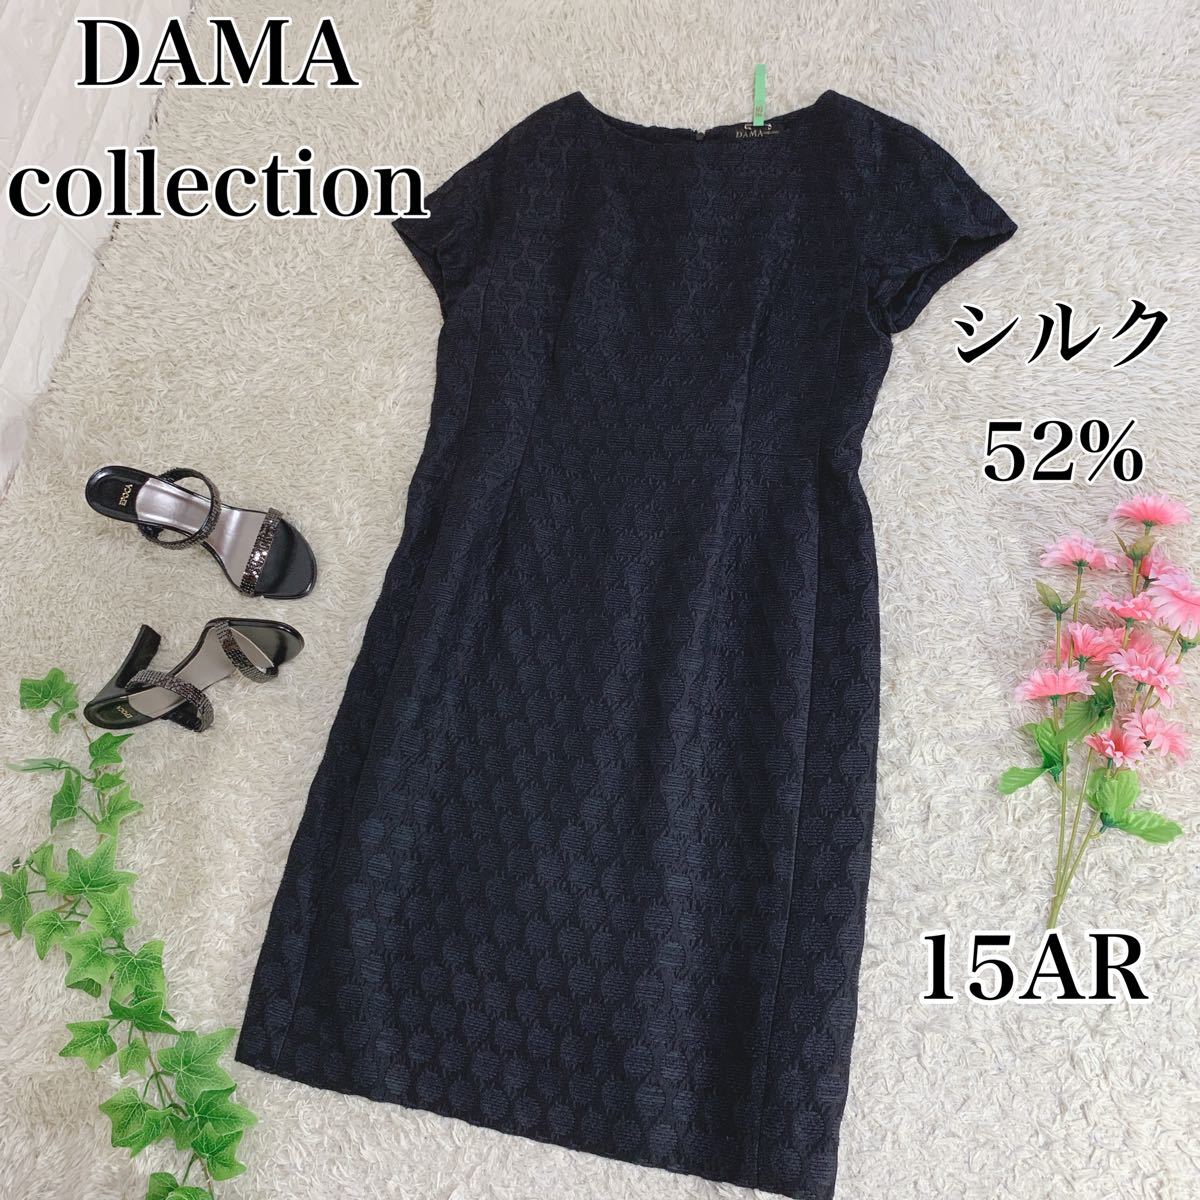 美品 DAMA collection ワンピース ジャガード ドット柄 15号 半袖ワンピース 大きいサイズ 黒に近いネイビー